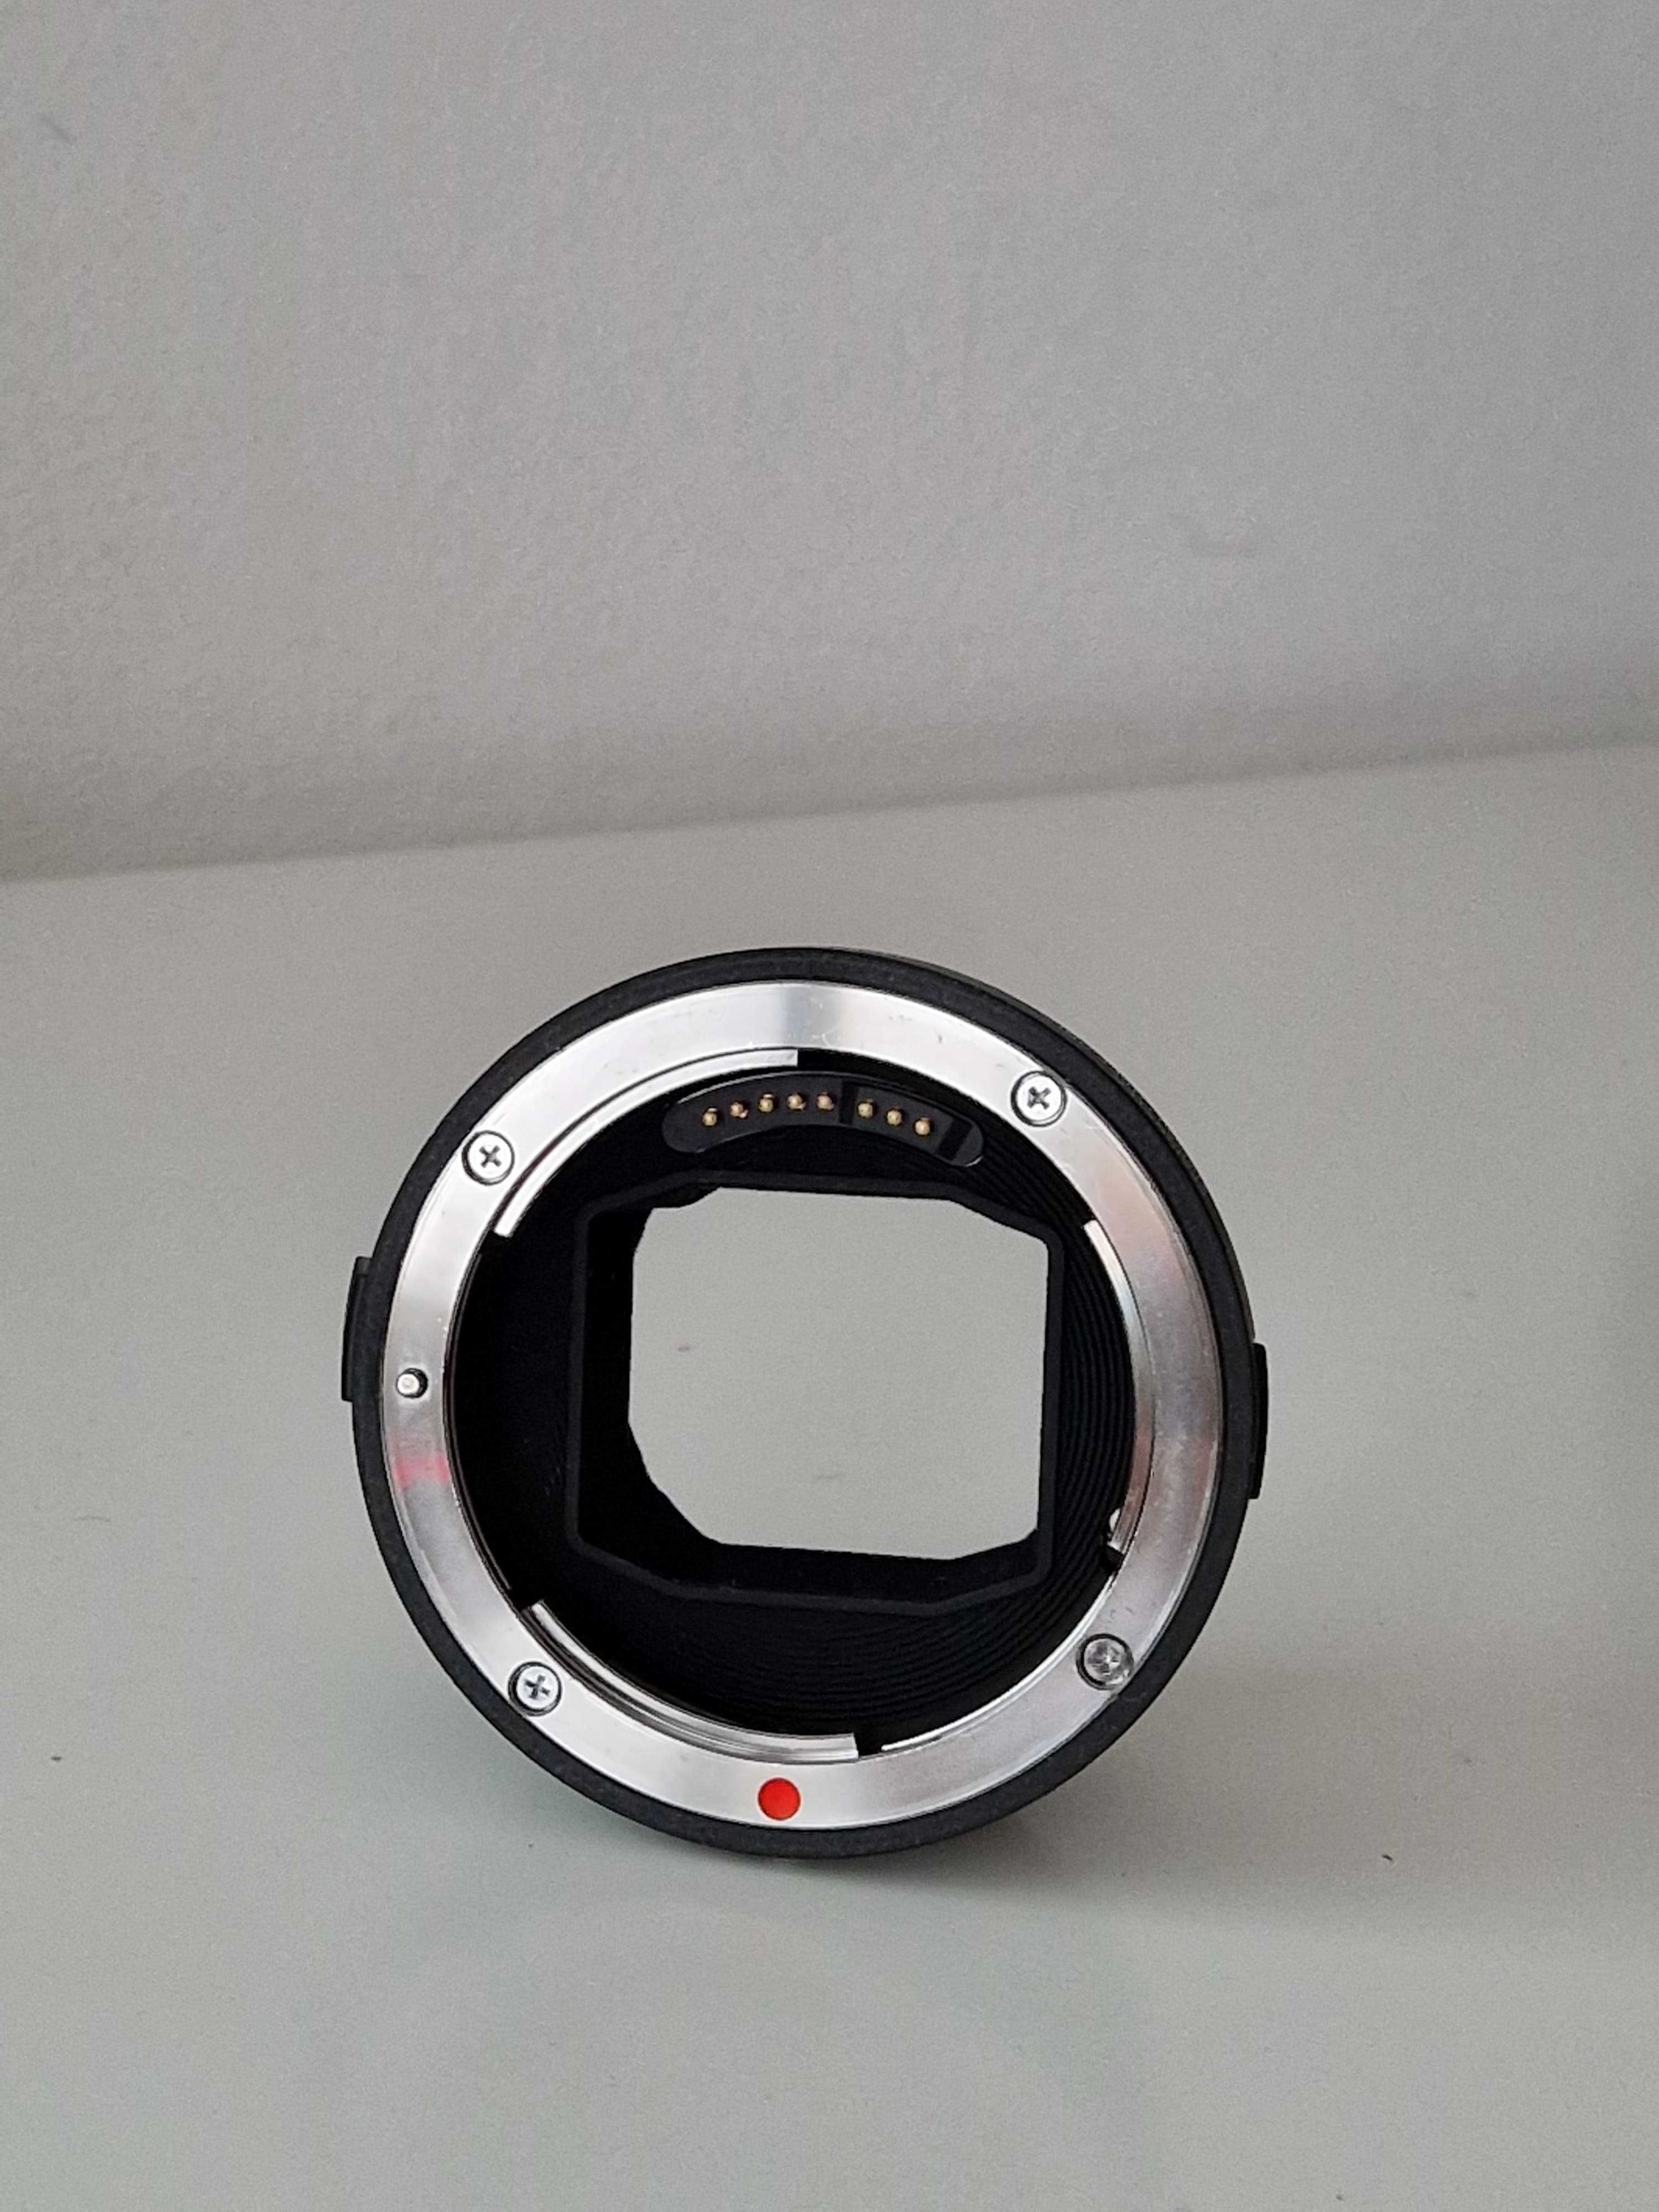 Sigma MC11 - Adaptor Canon EF - Sony E